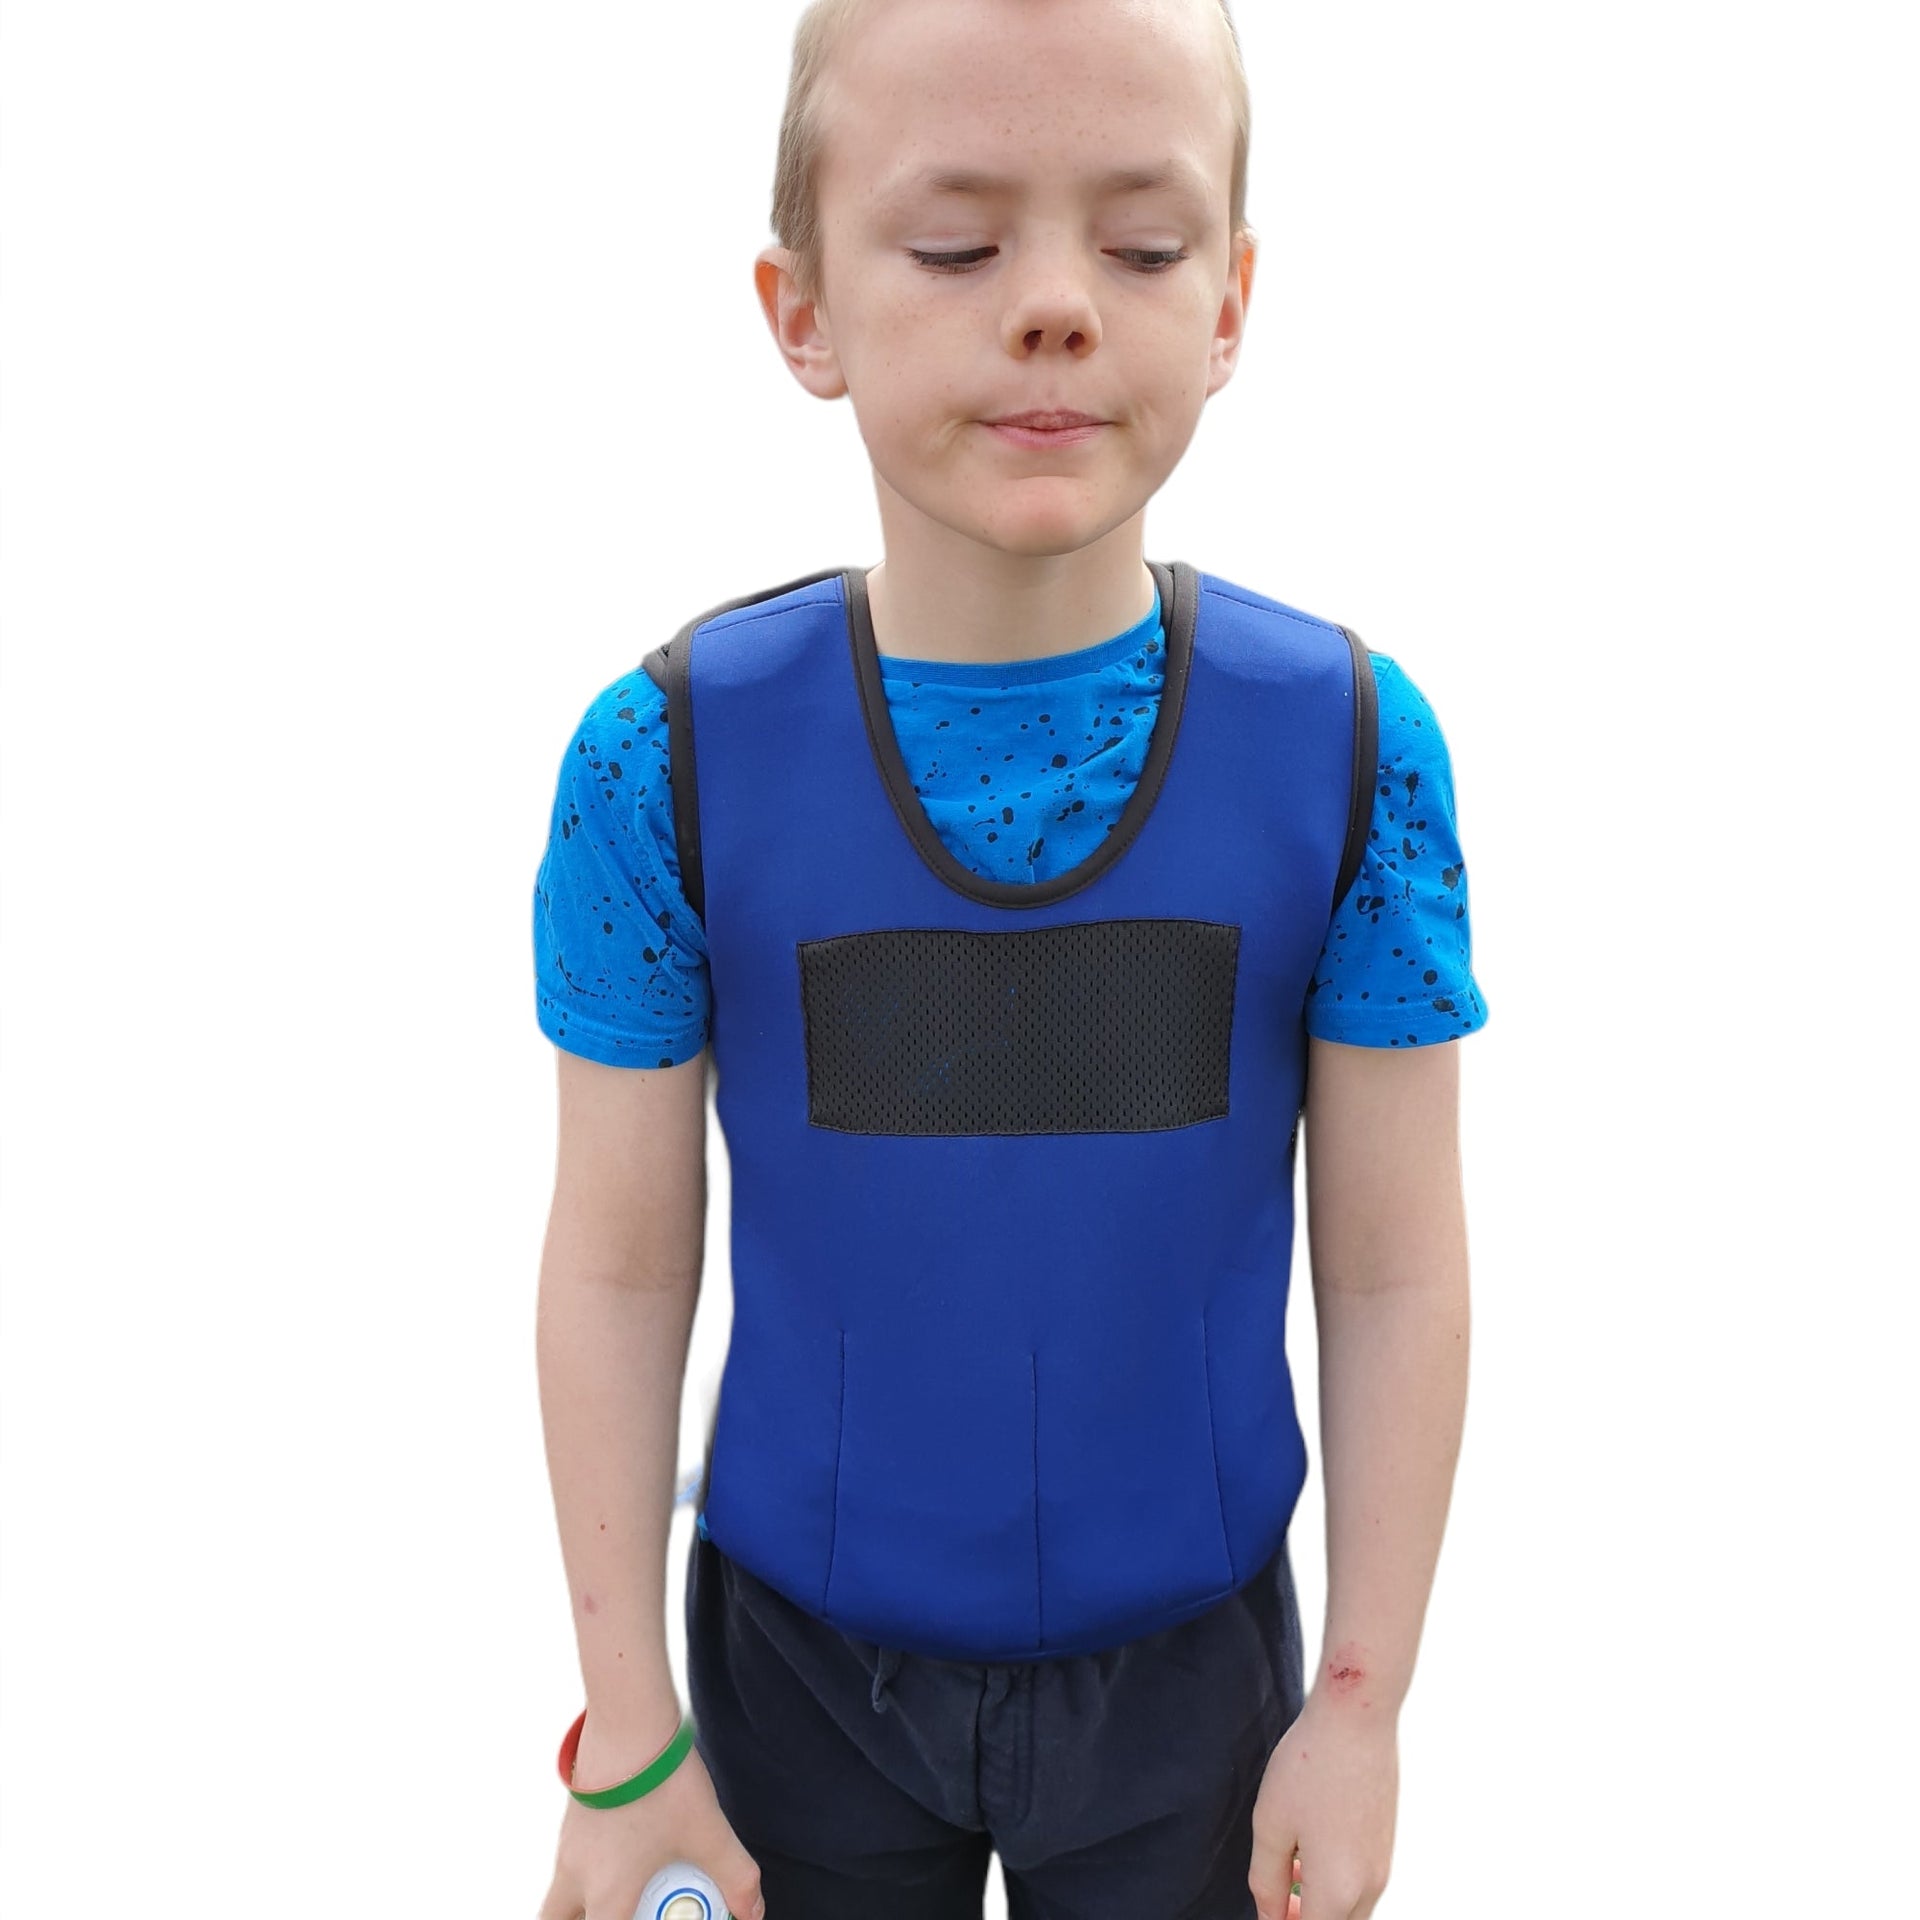 RETURNS Weighted Adjustable Compression Vest-Deep Pressure for Children age  2-10+